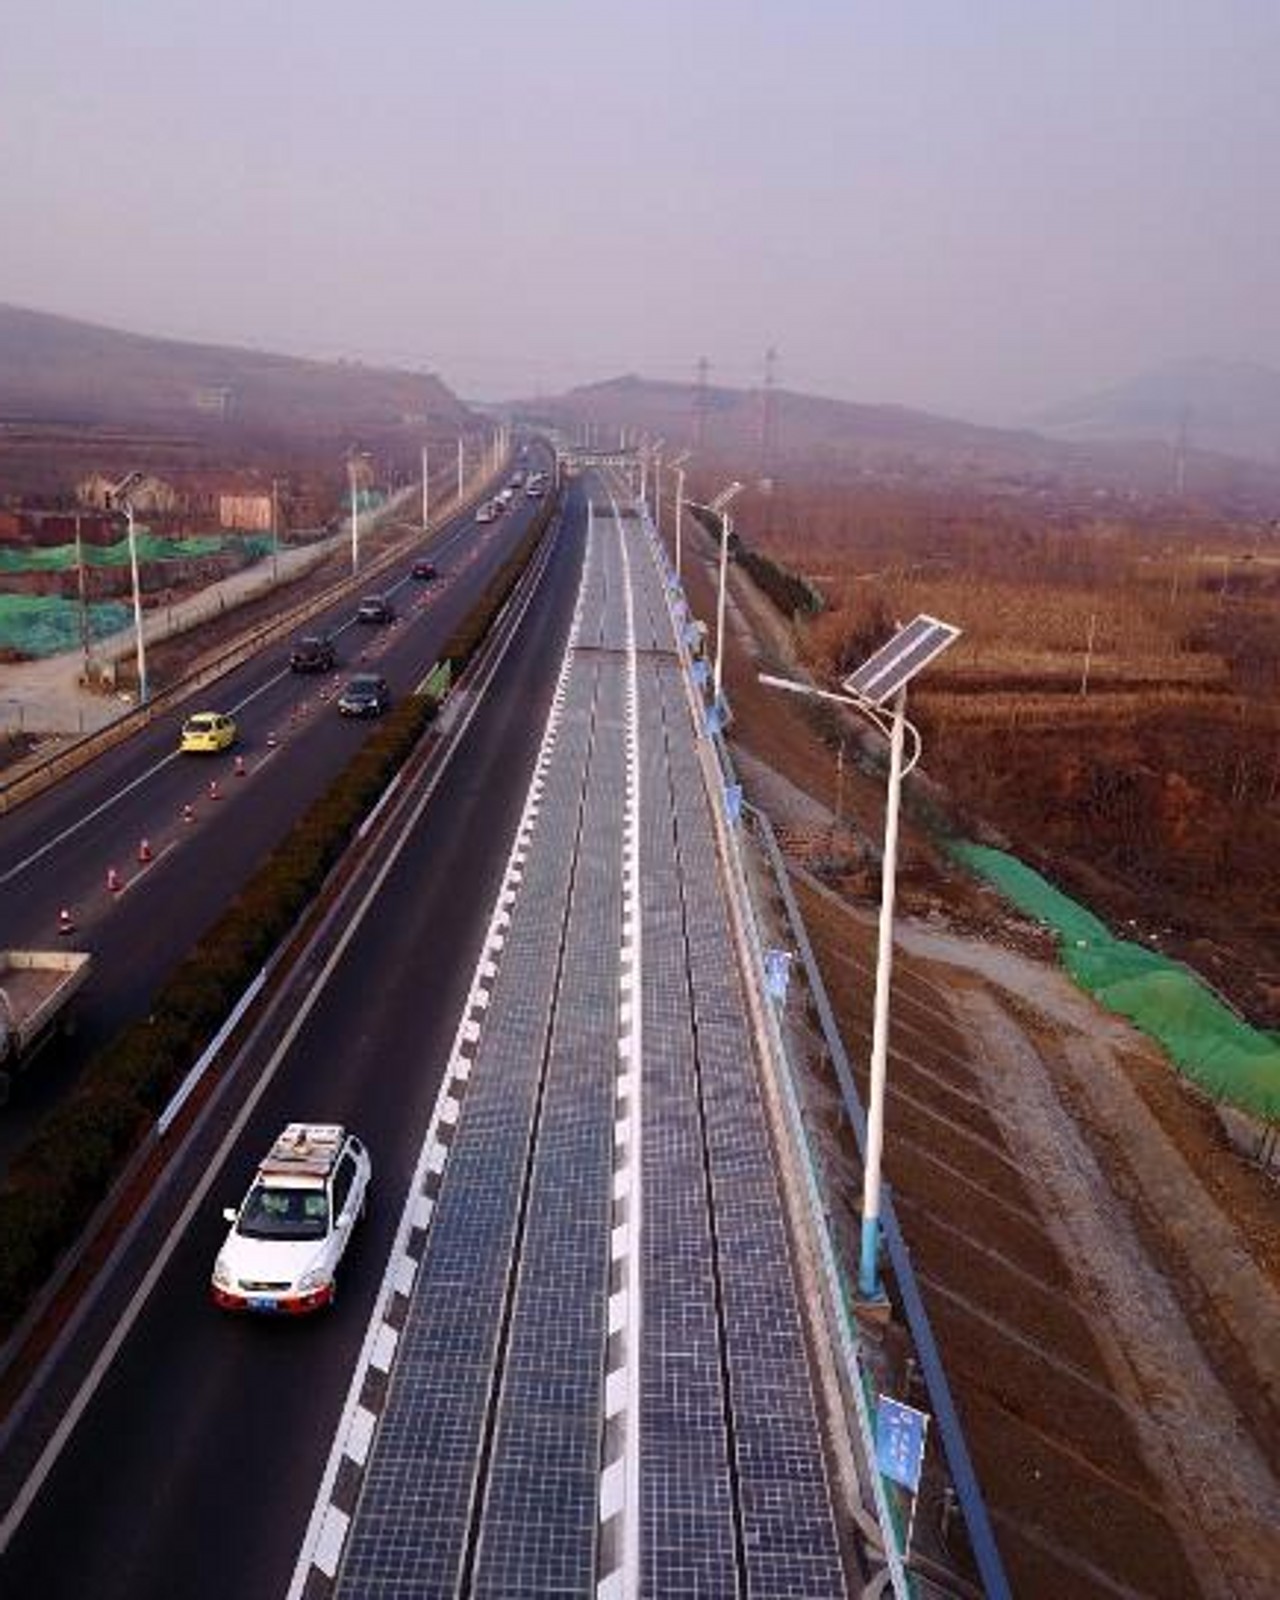 真牛!昨日山东济南世界第一条光伏高速公路通车运行,路面可发电